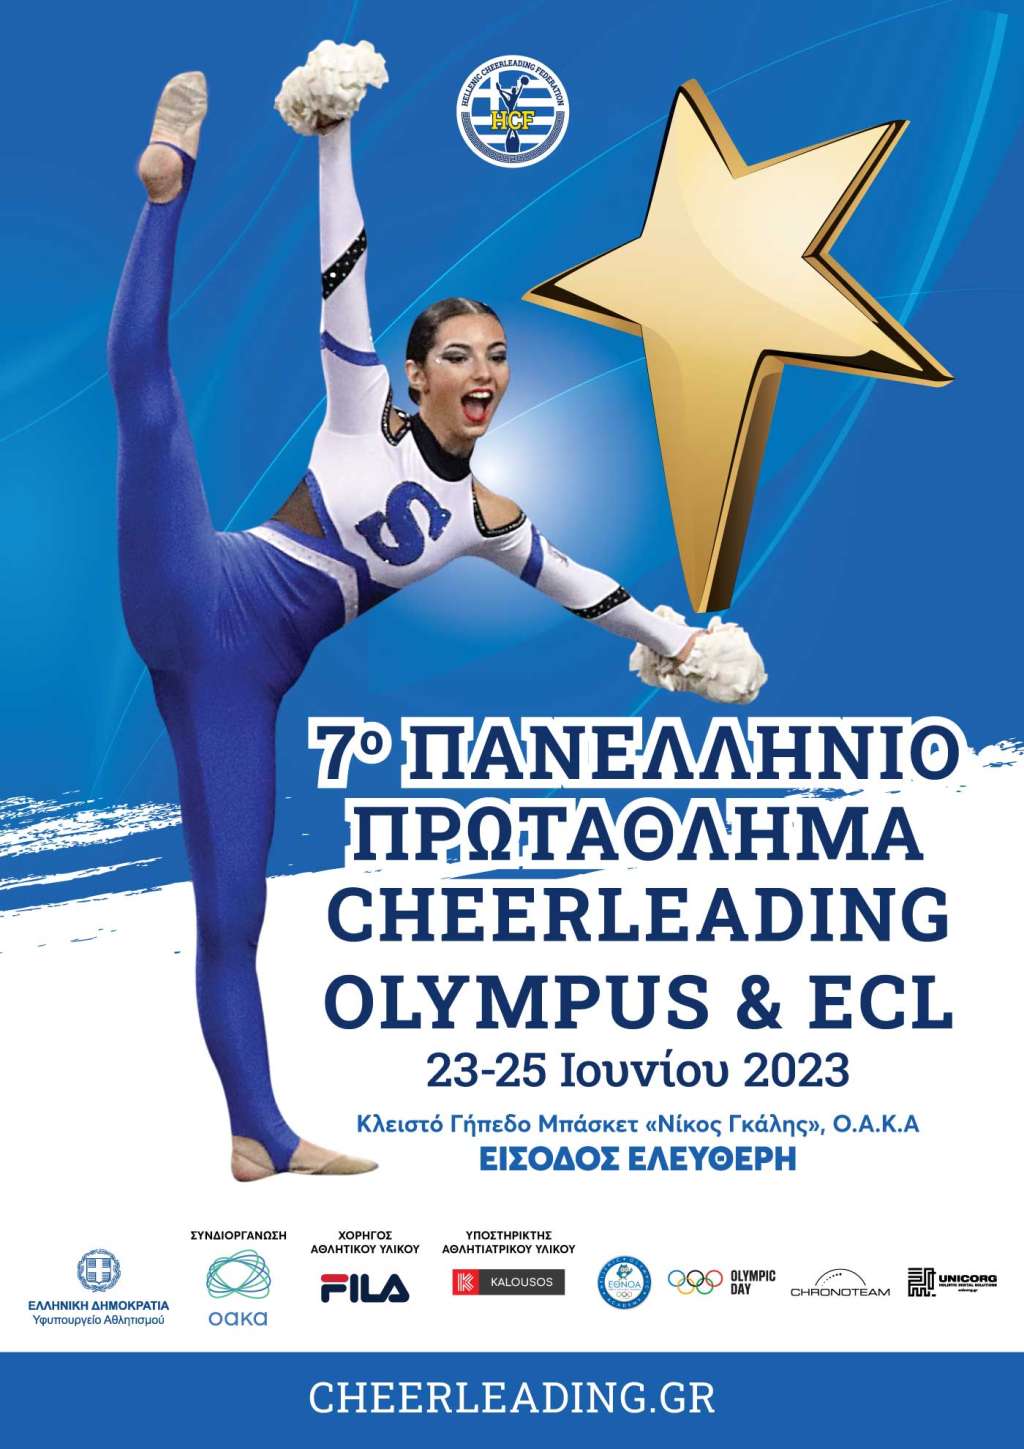 Πανελλήνιο Πρωτάθλημα Cheerleading 2023  Olympus All Star Cheer Open 2023